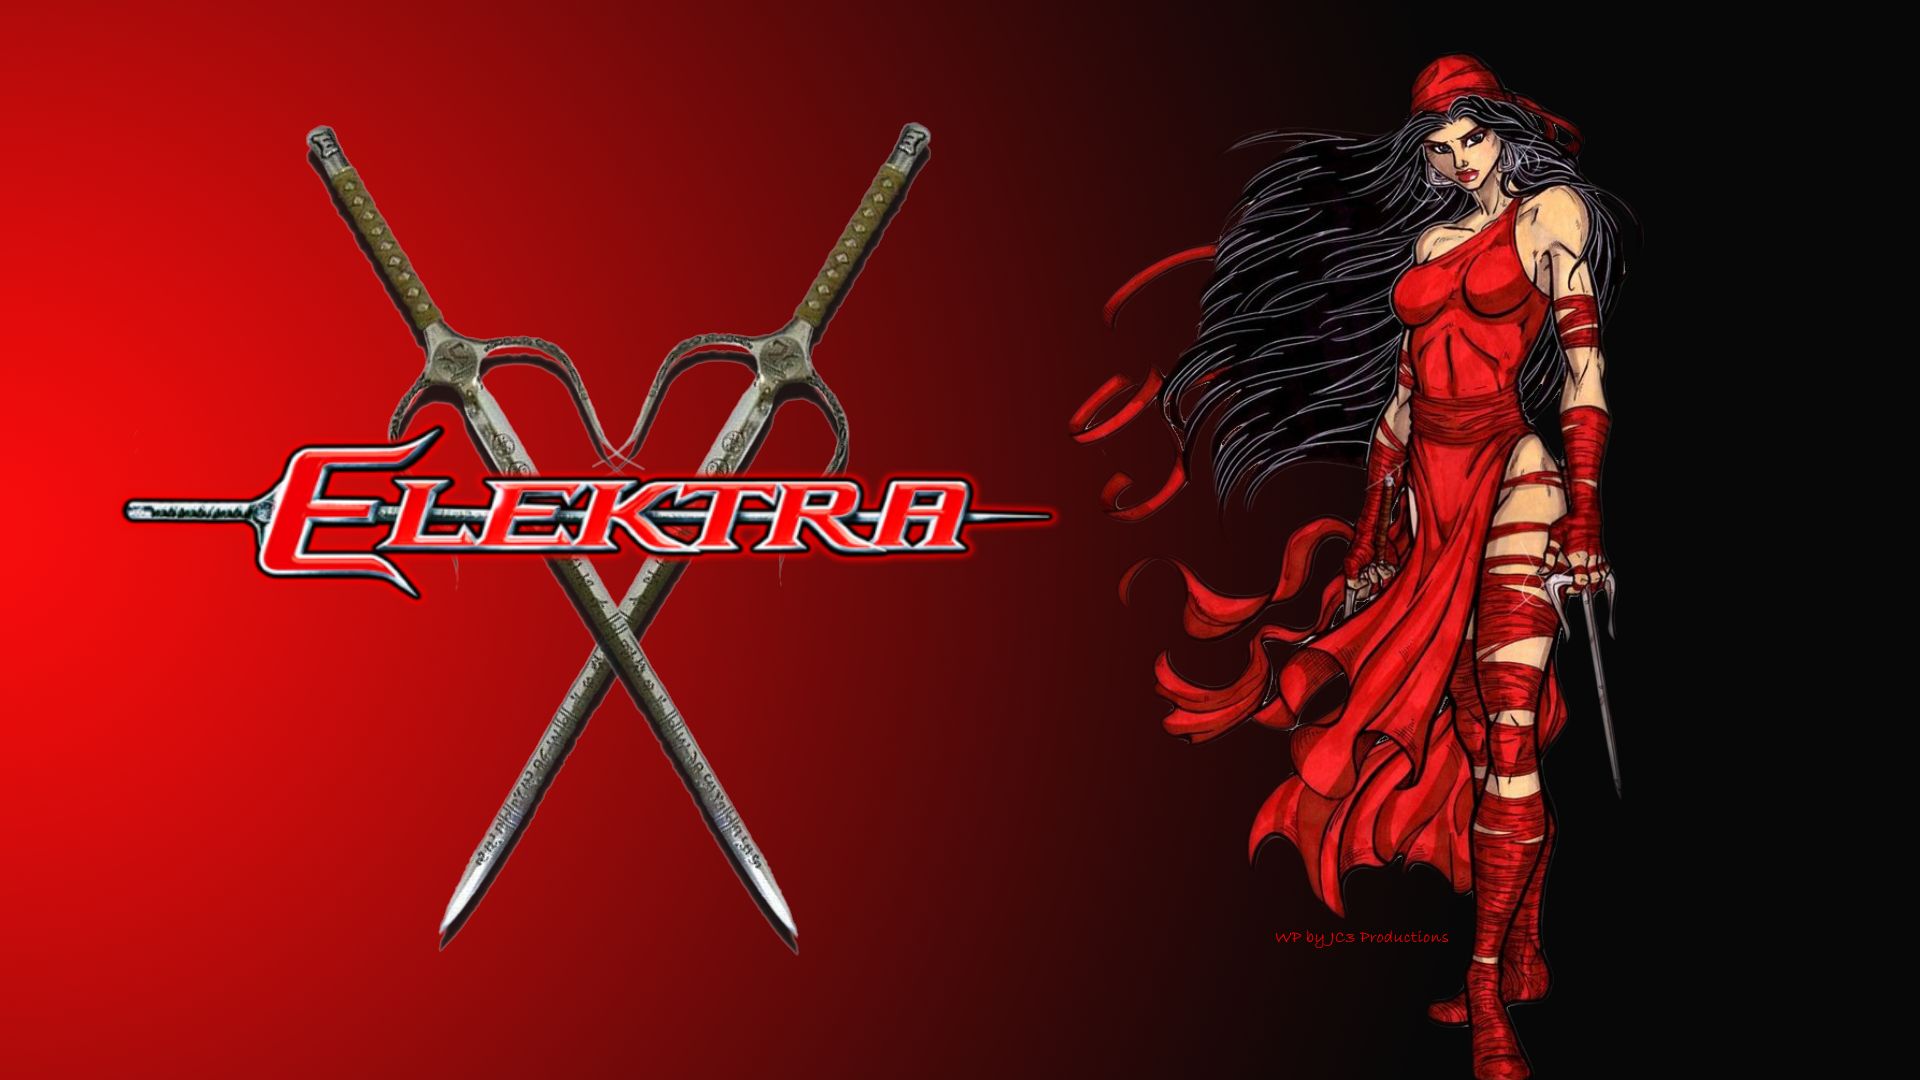 Elektra Sai Swords , HD Wallpaper & Backgrounds